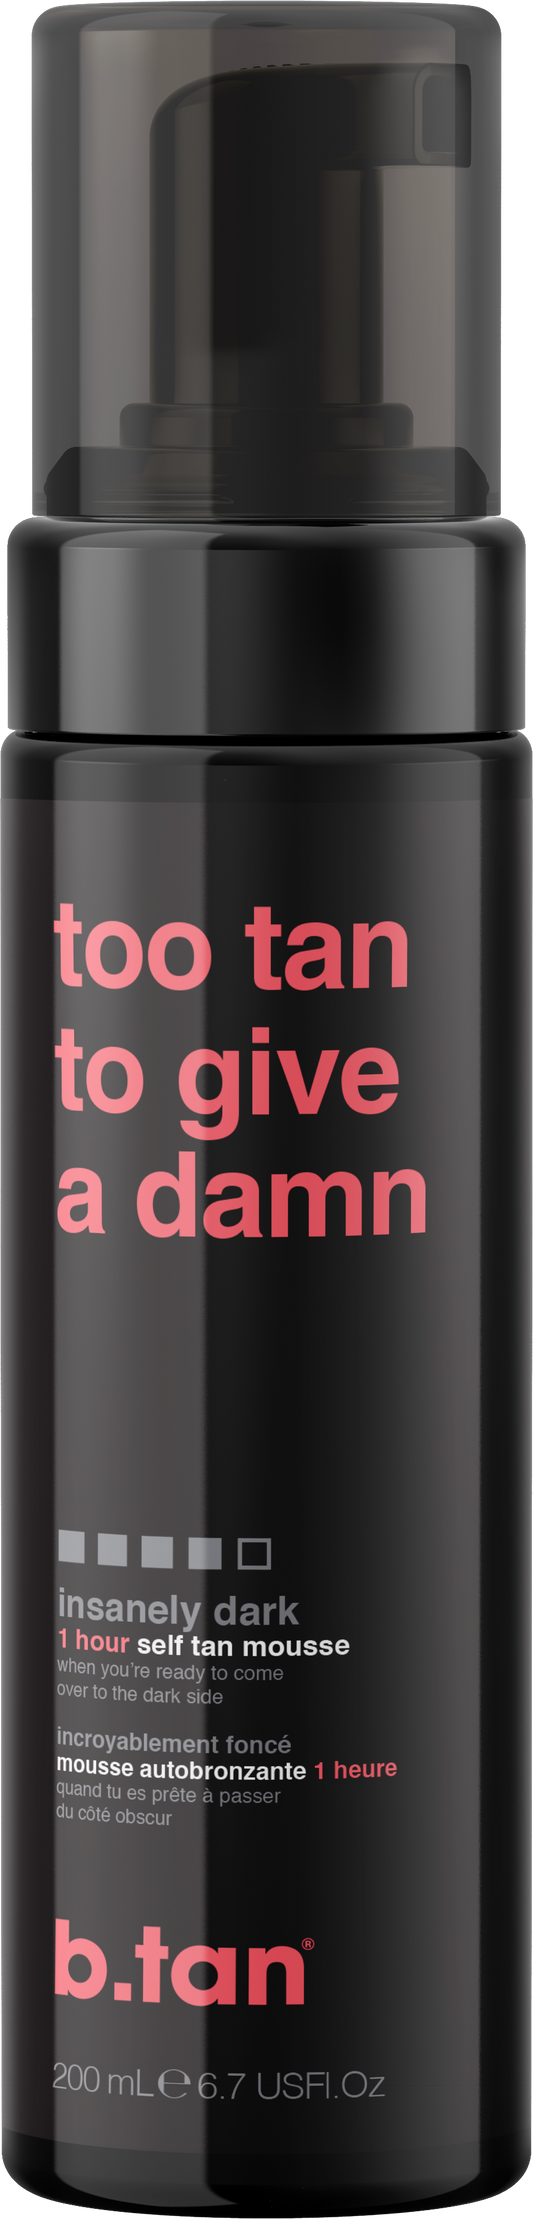 BTAN too tan to give a damn - self tan mousse